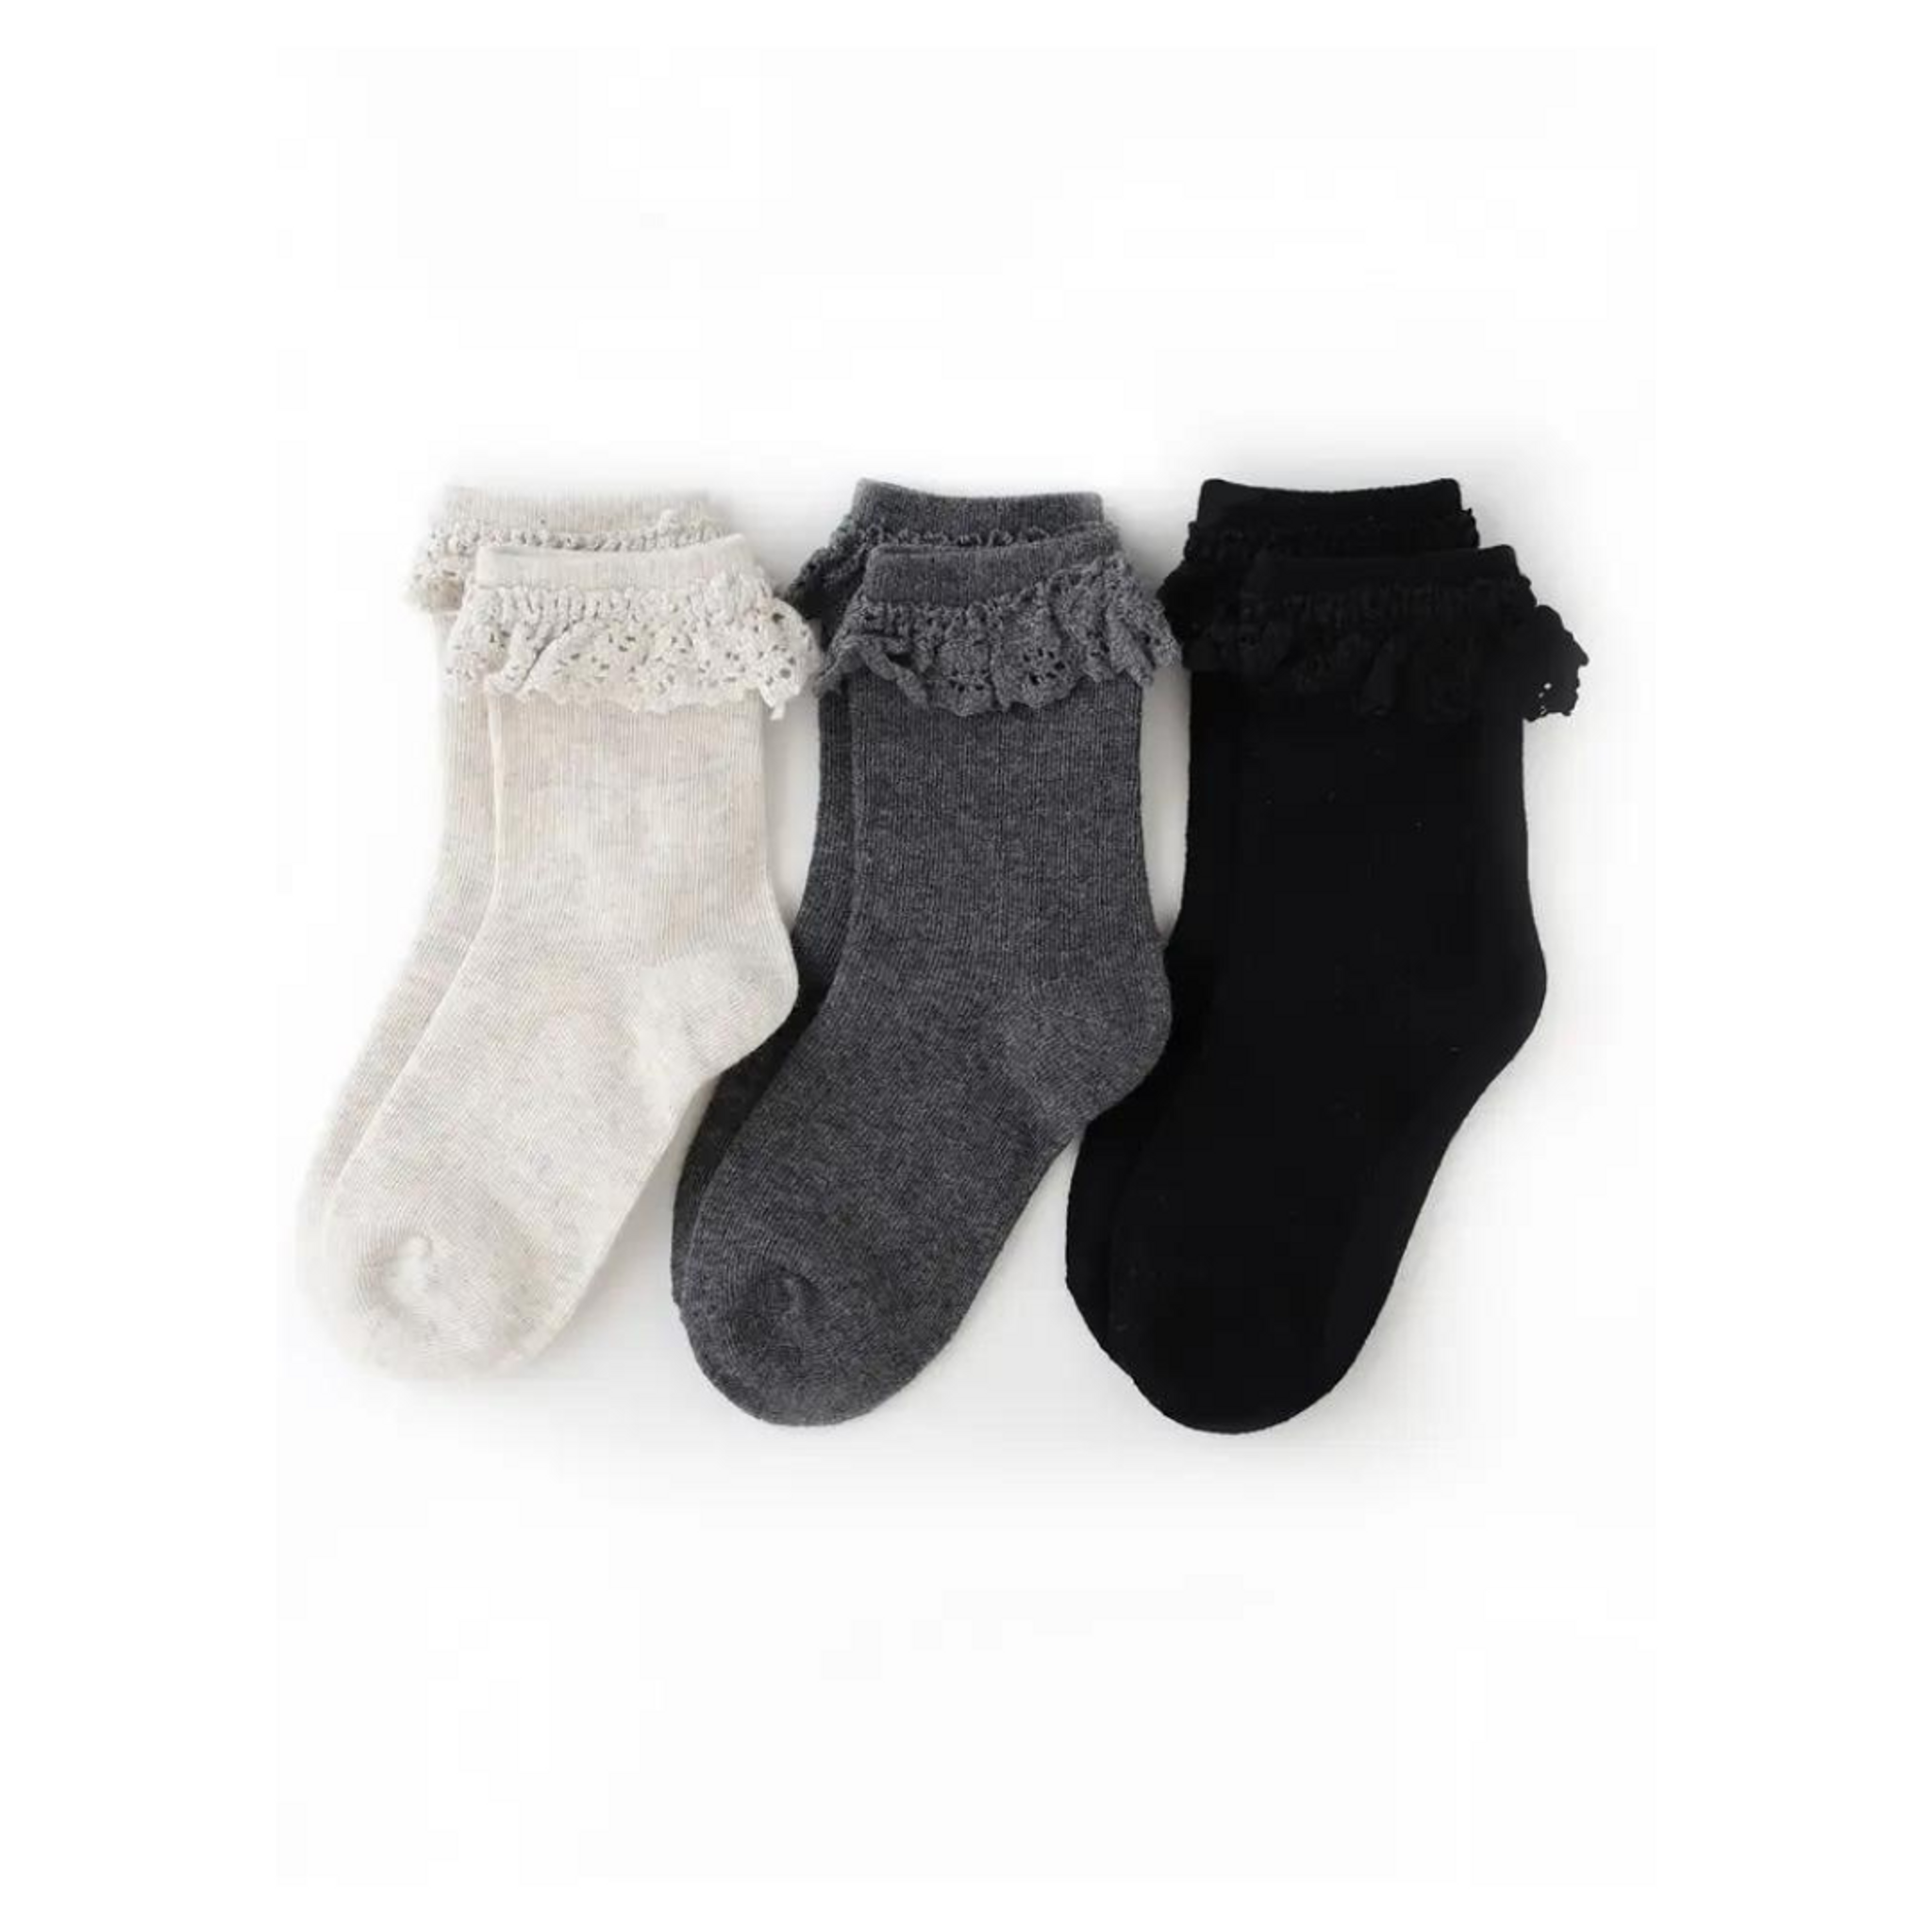 Midnight Lace Socks 3pk